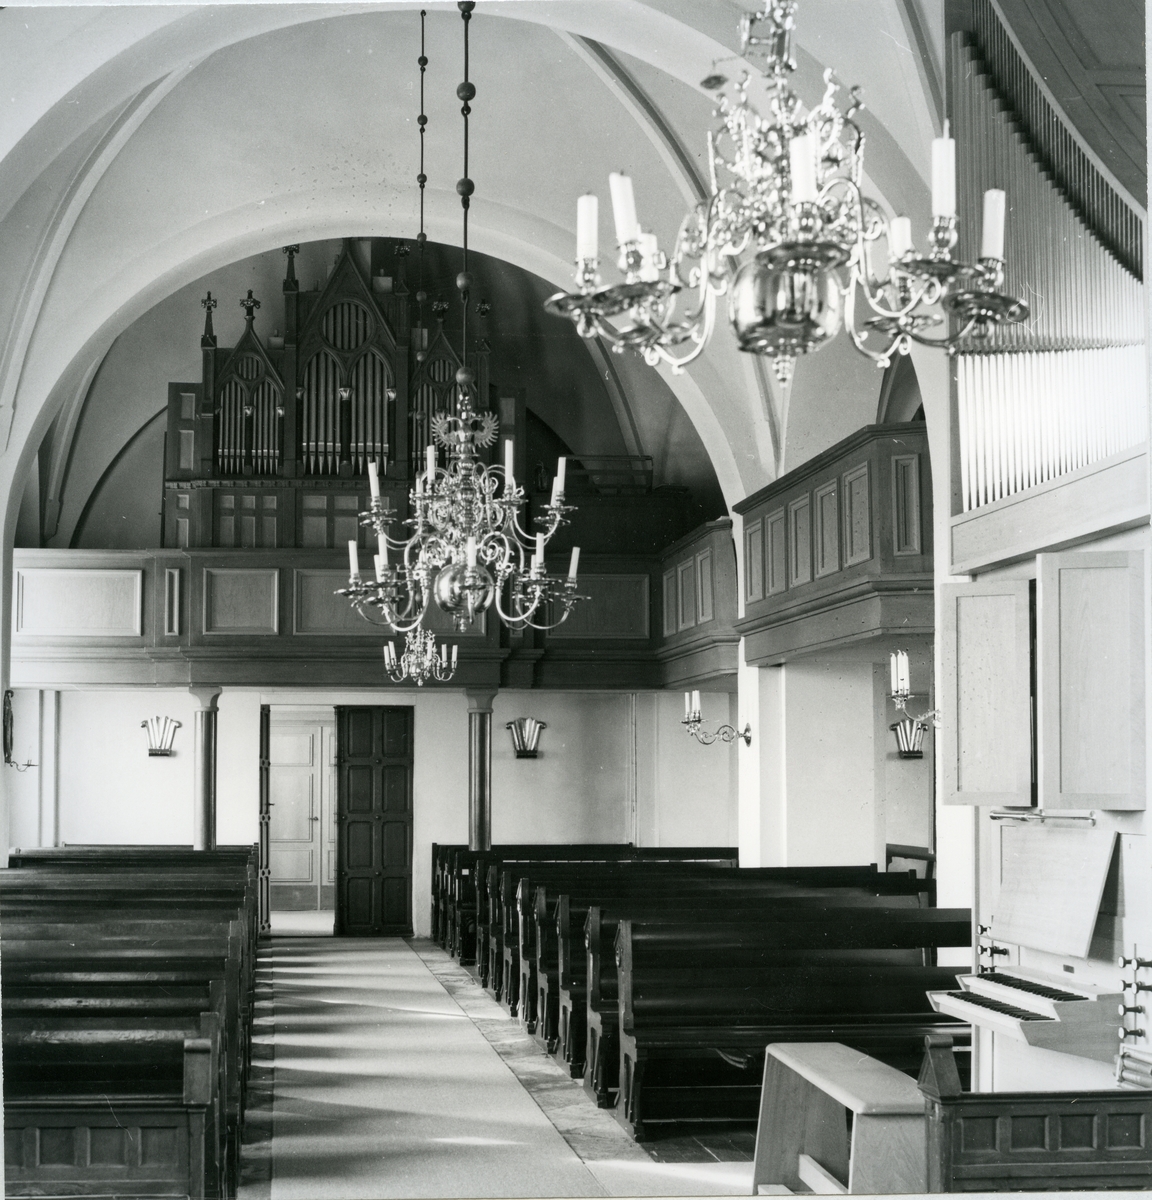 Lundby sn.
Lundby kyrka, interiör med kyrkbänkar, kyrkorgel och malmkronor. 1975.